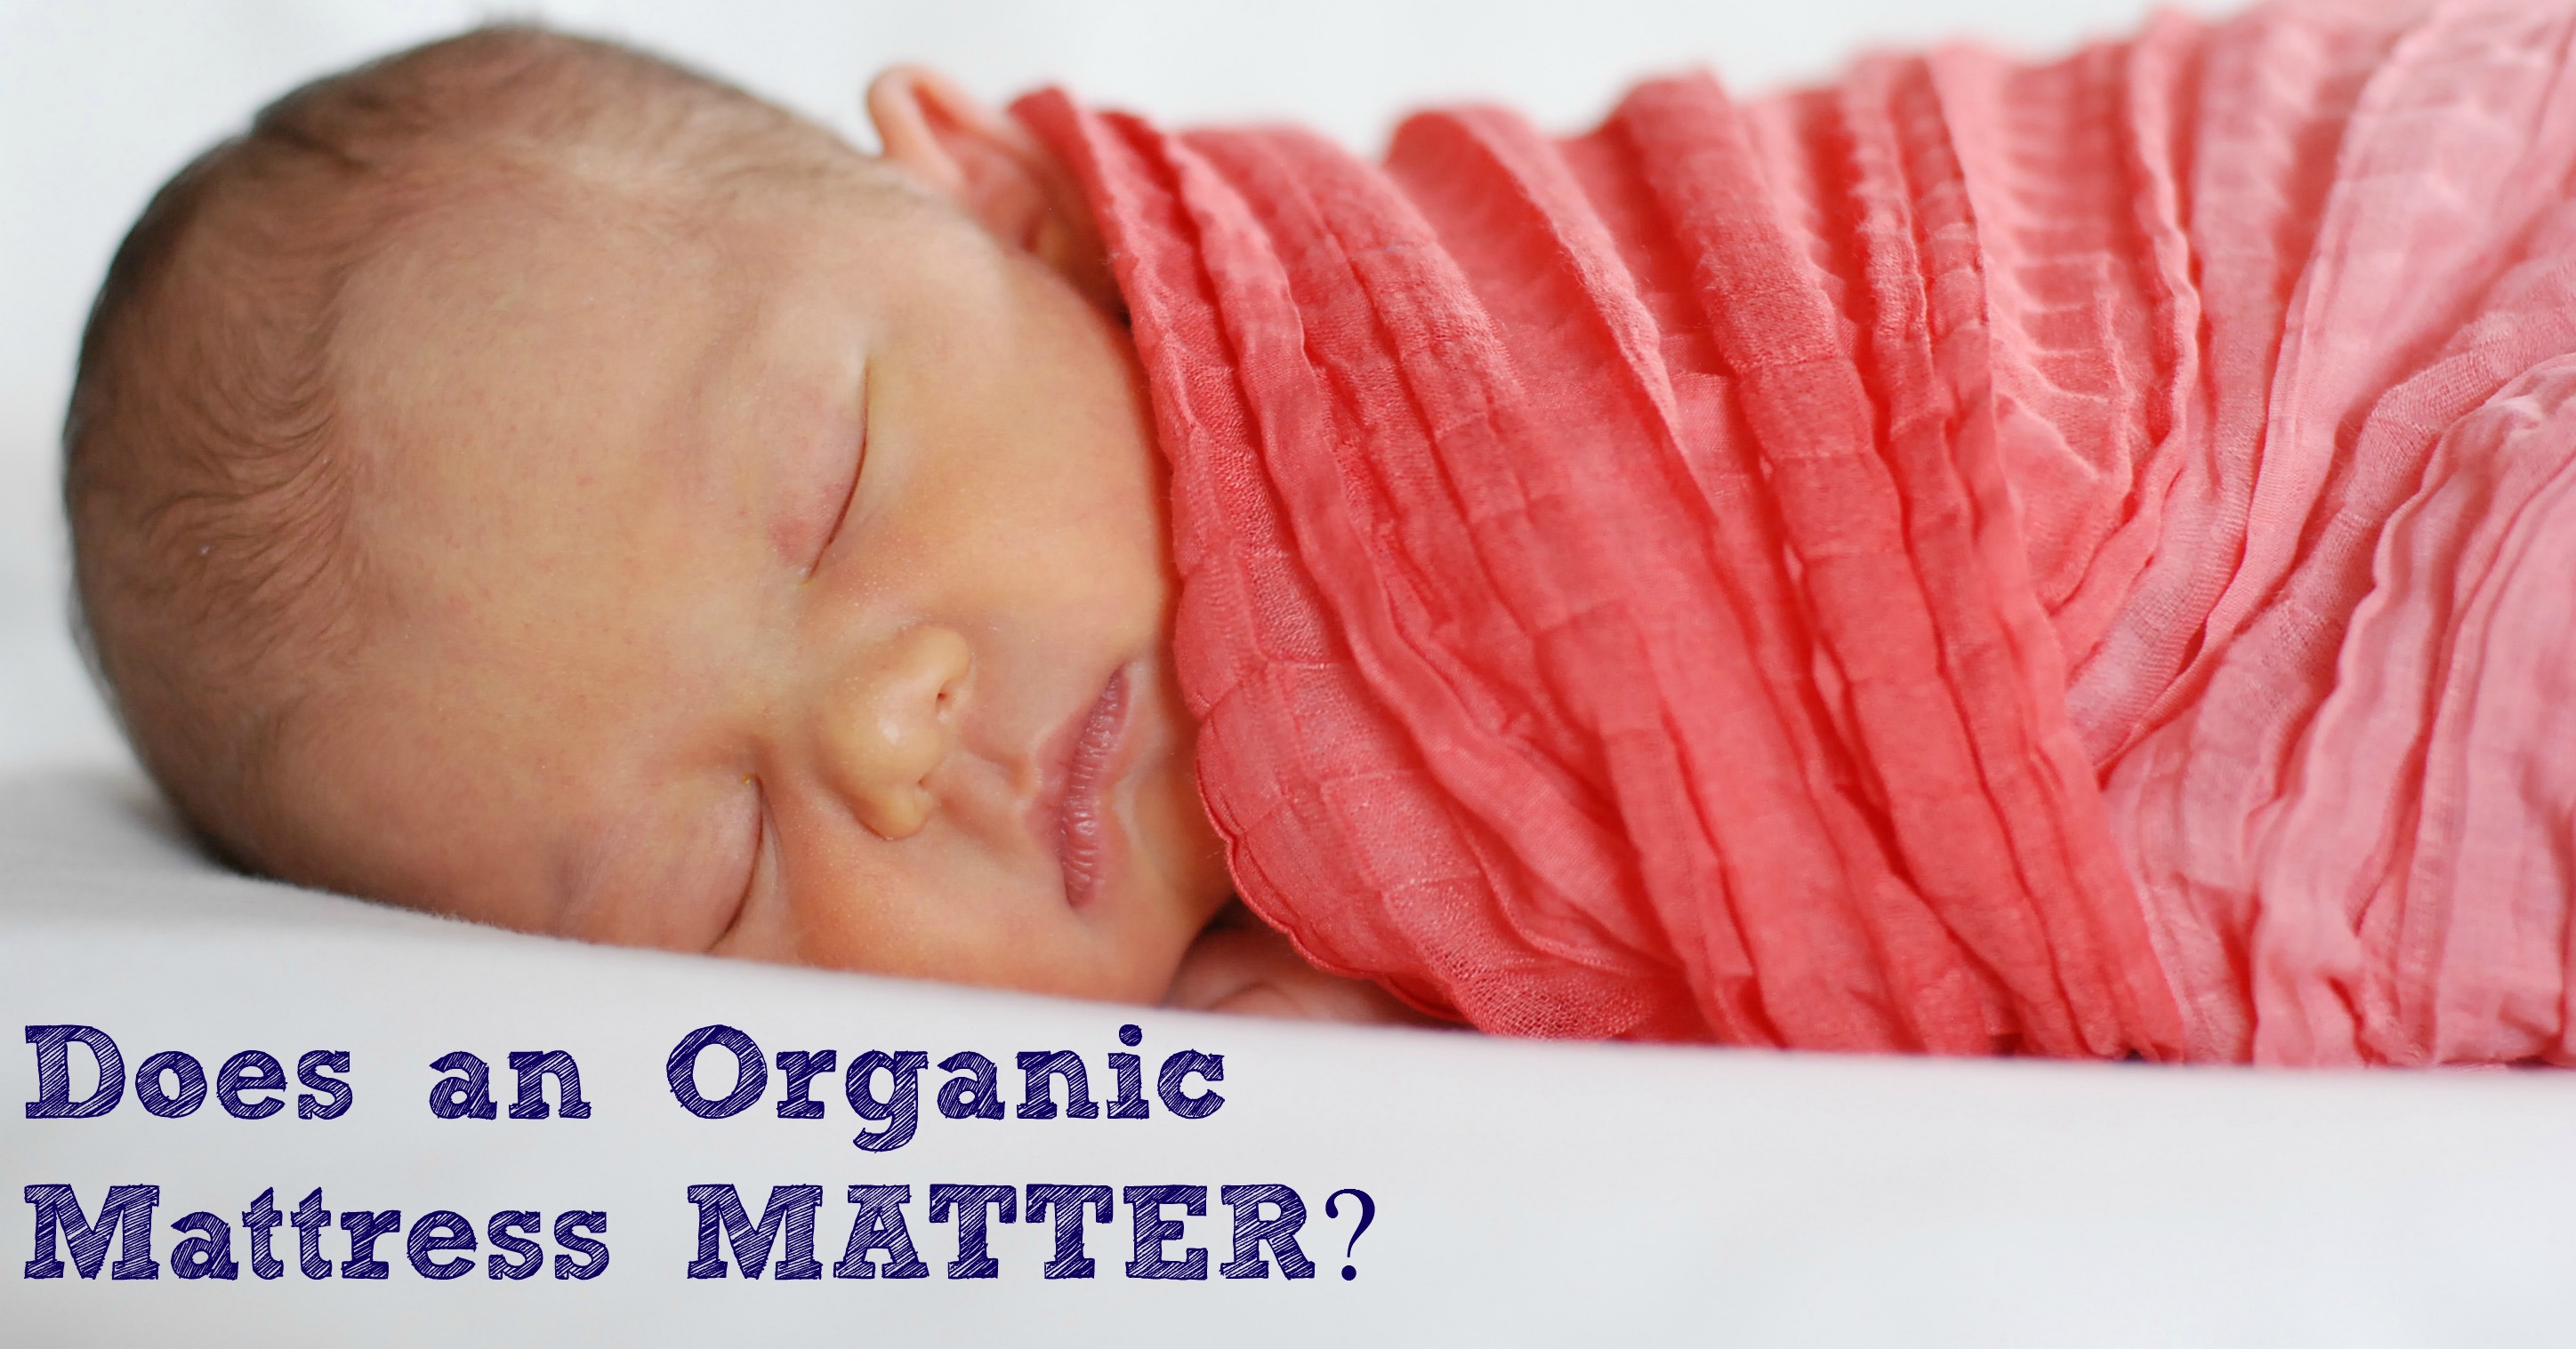 Crib Logic: Does an Organic Mattress Matter?